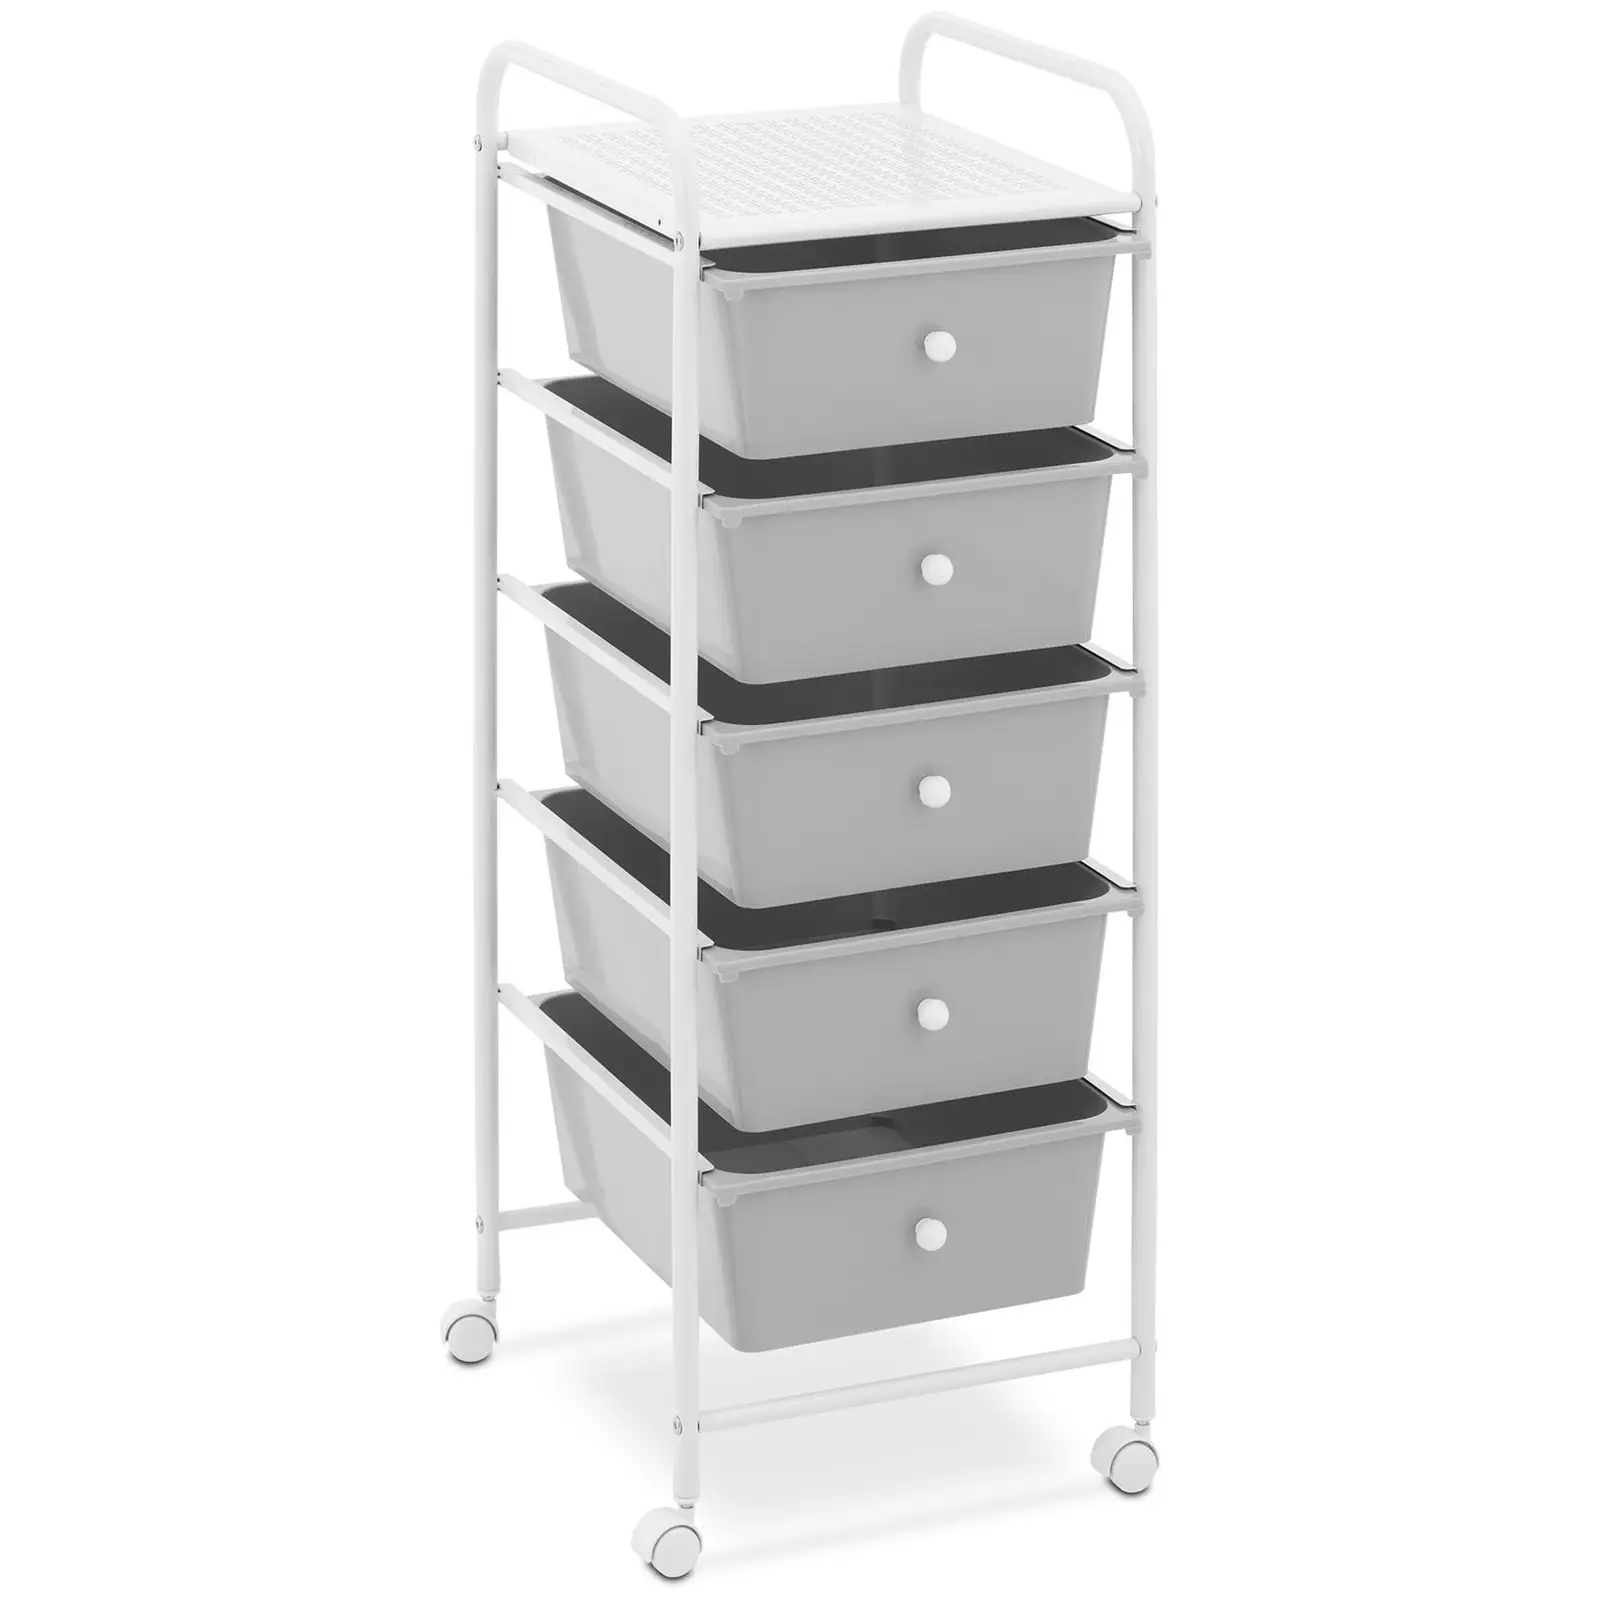 Salon Trolley - 5 drawers - grey